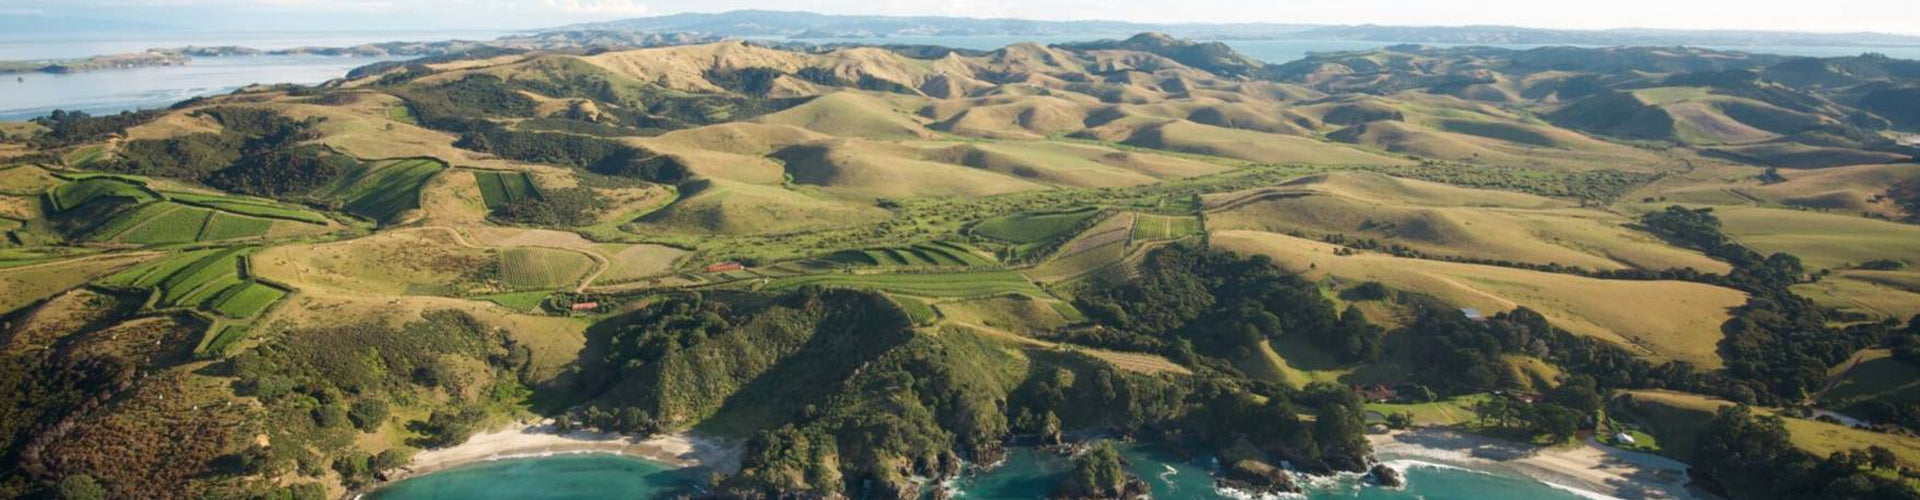 Man O' War Vineyards Waiheke Island New Zealand